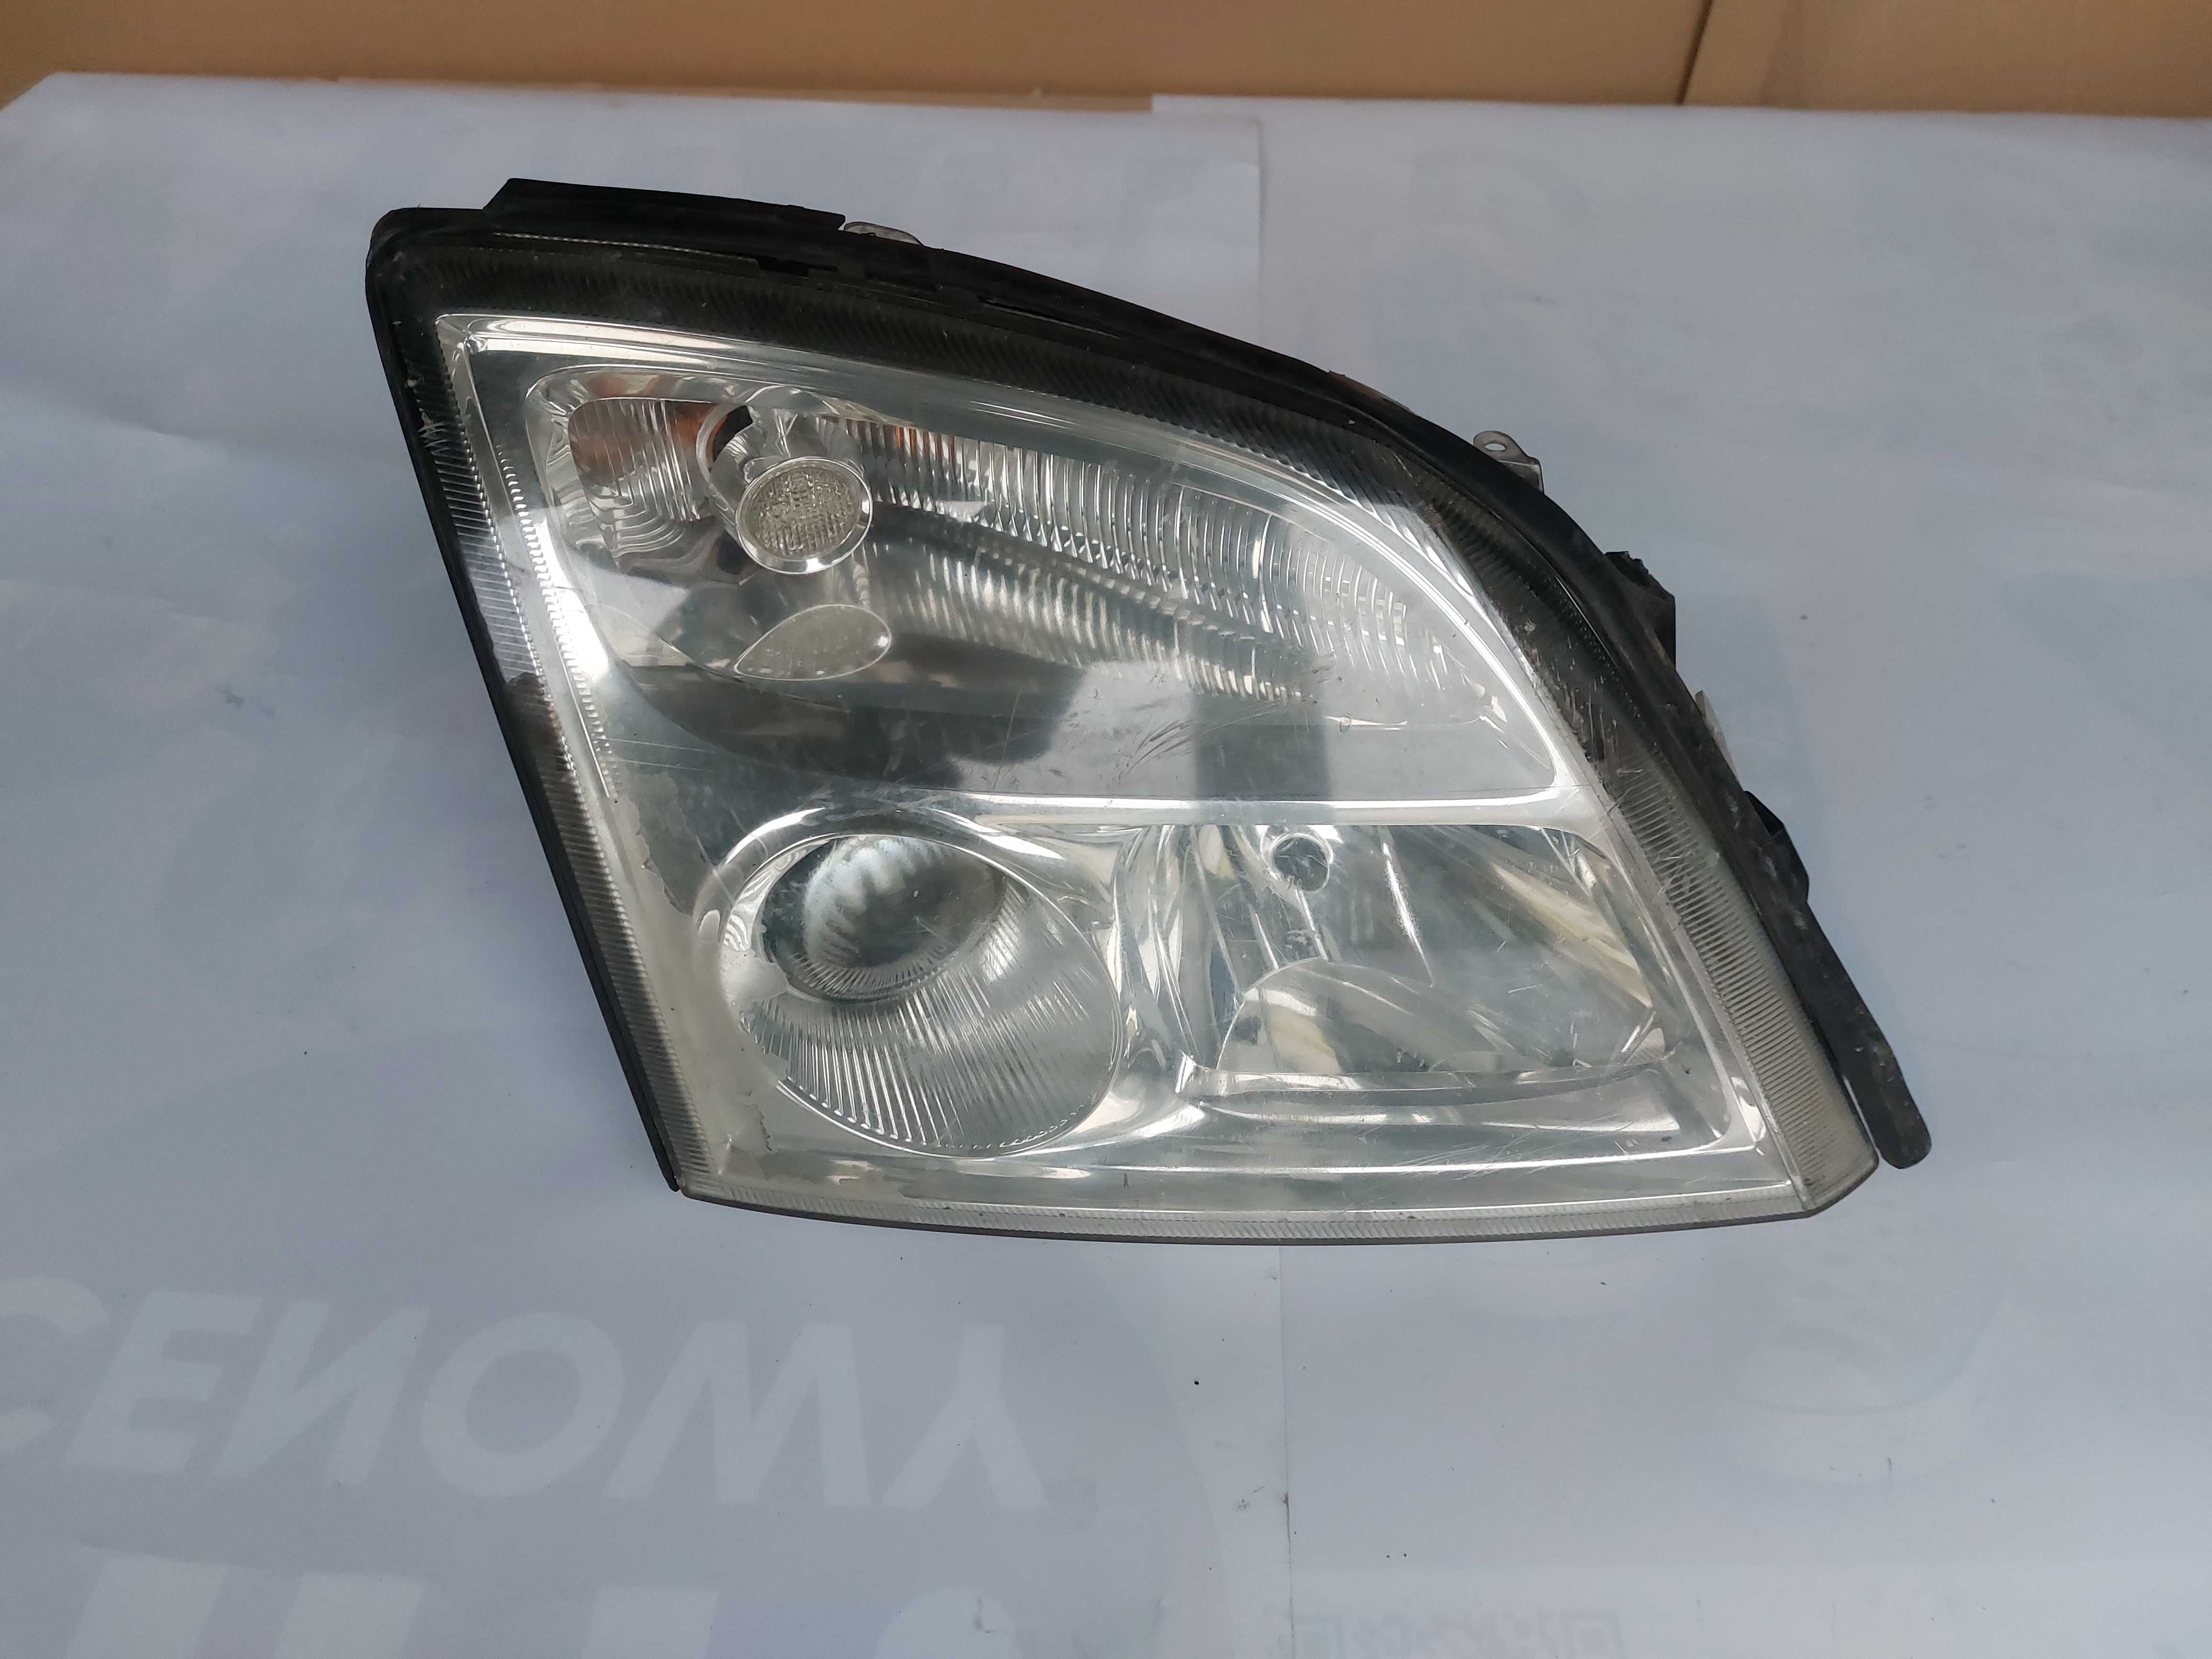 Lampa przód prawa Opel Vectra c Signum 02-05.r eu kpl XENON